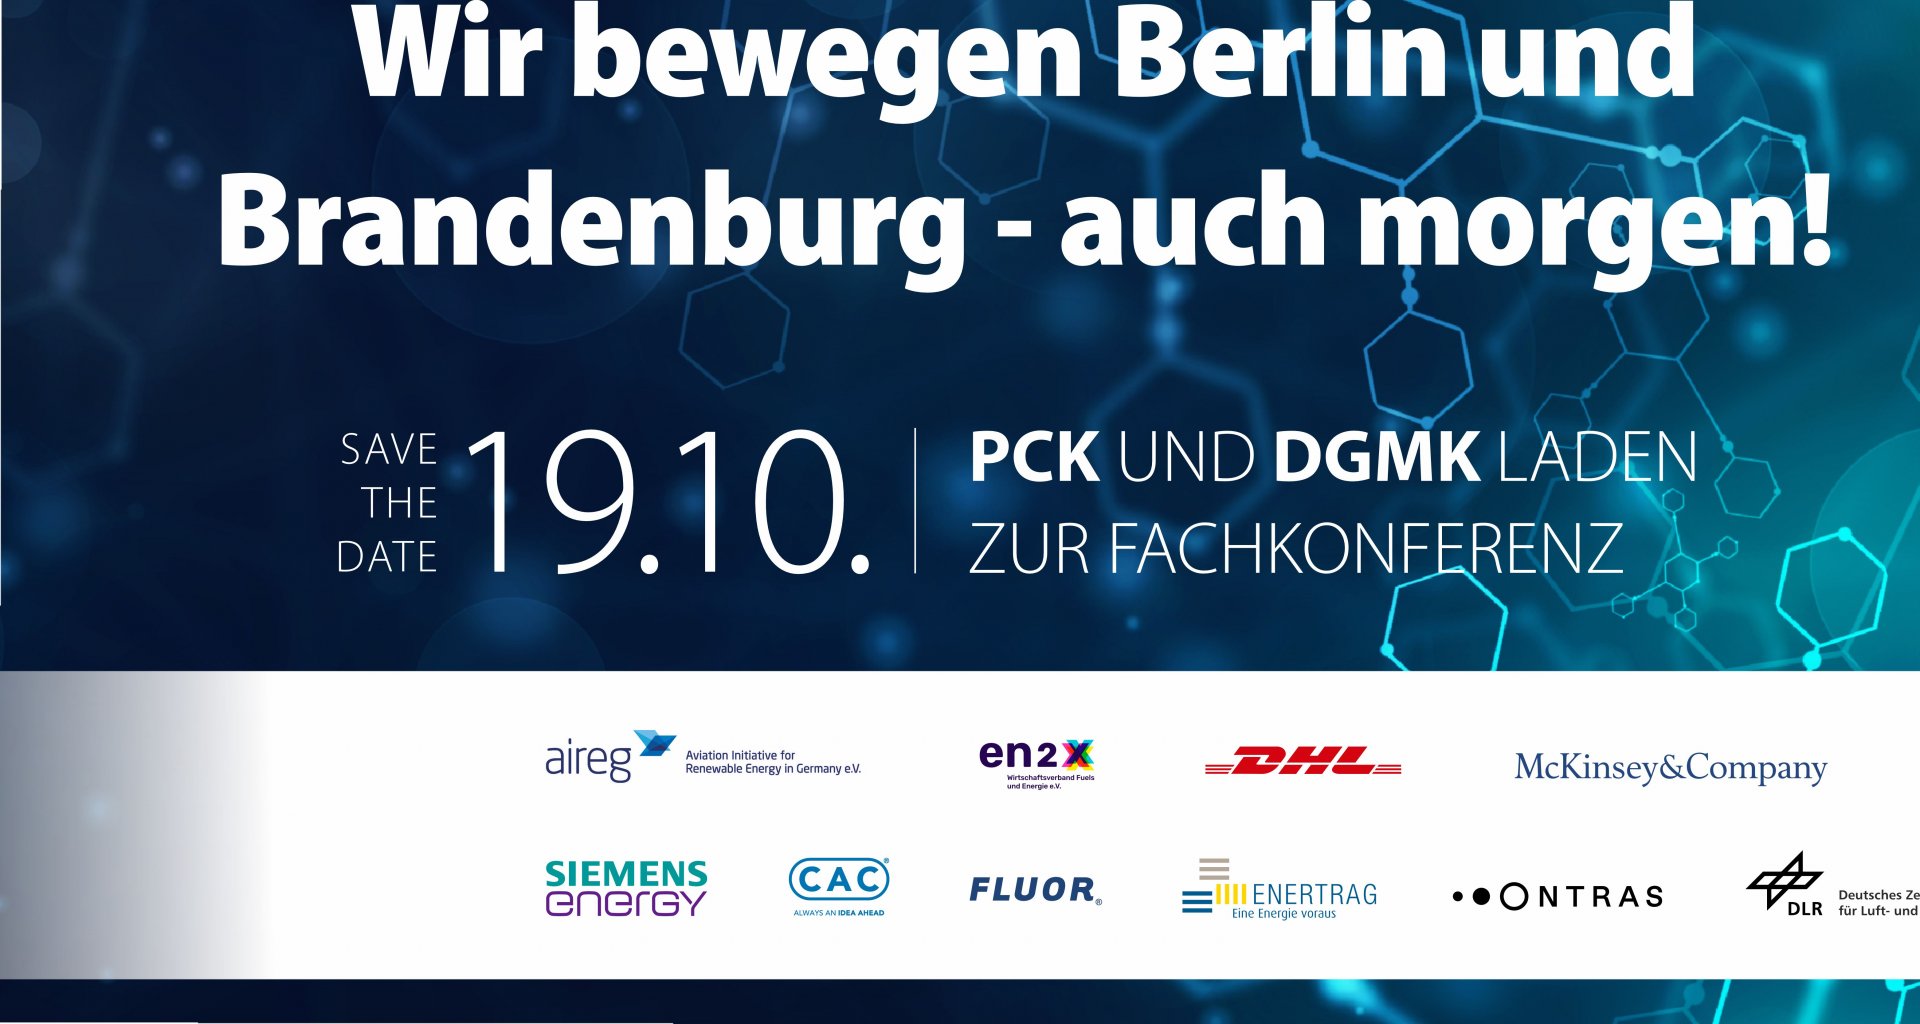 DGMK-PCK Fachkonferenz